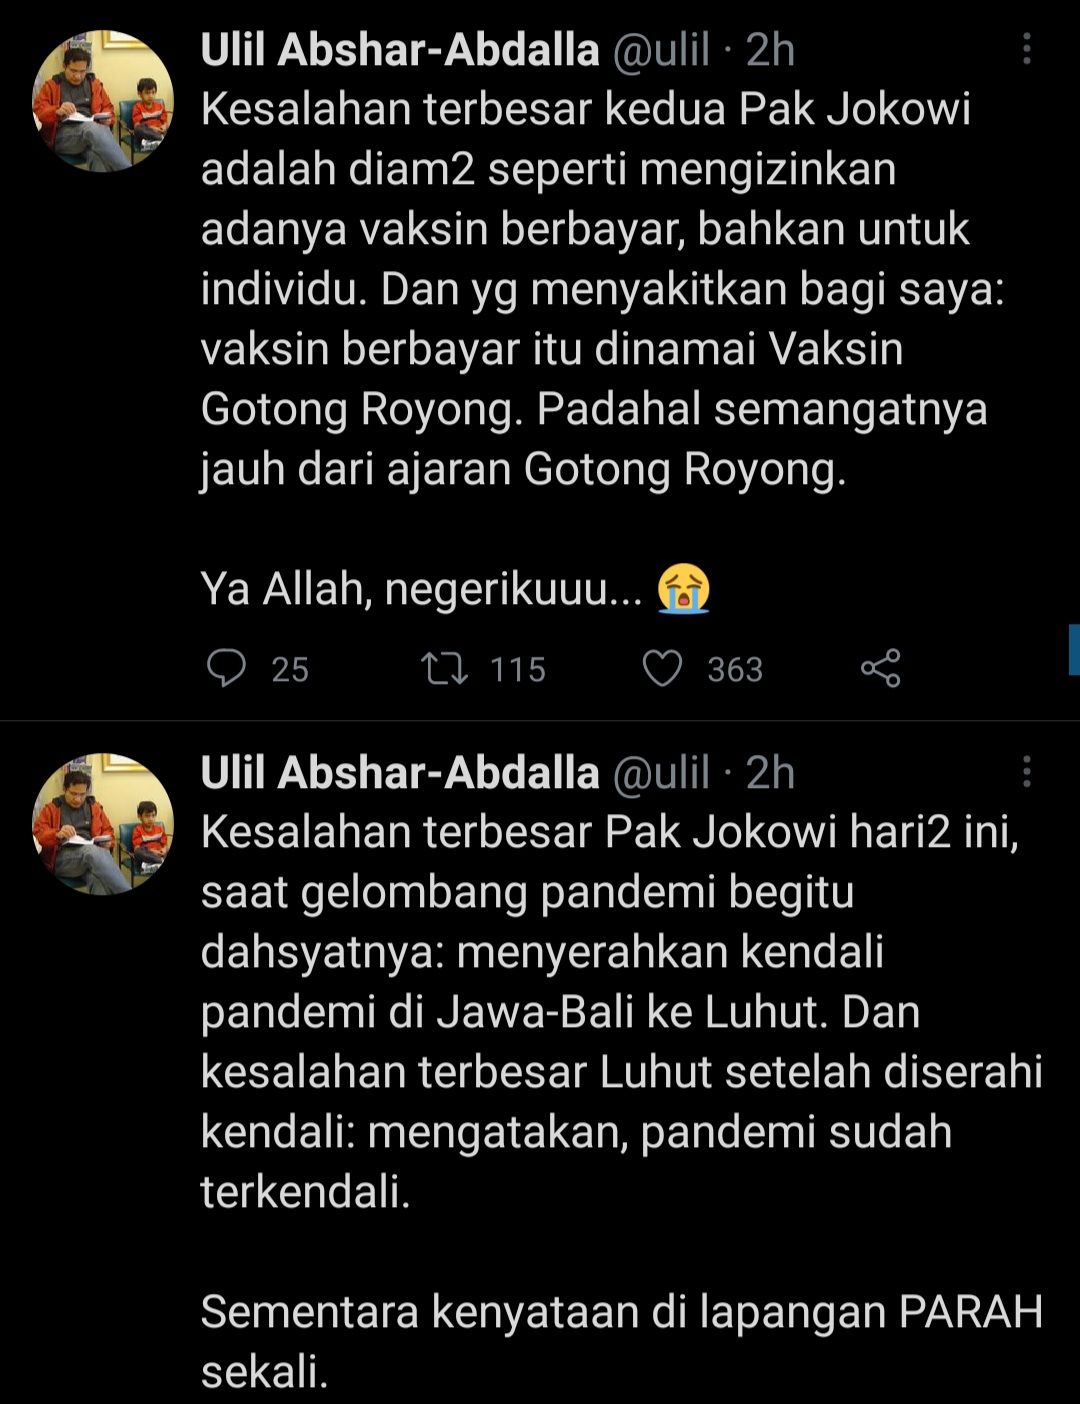 Ulil Abshar memaparkan kesalahan besar Presiden Jokowi dan Menko Marvest, Luhut B Pandjaitan soal pandemi Covid-19.